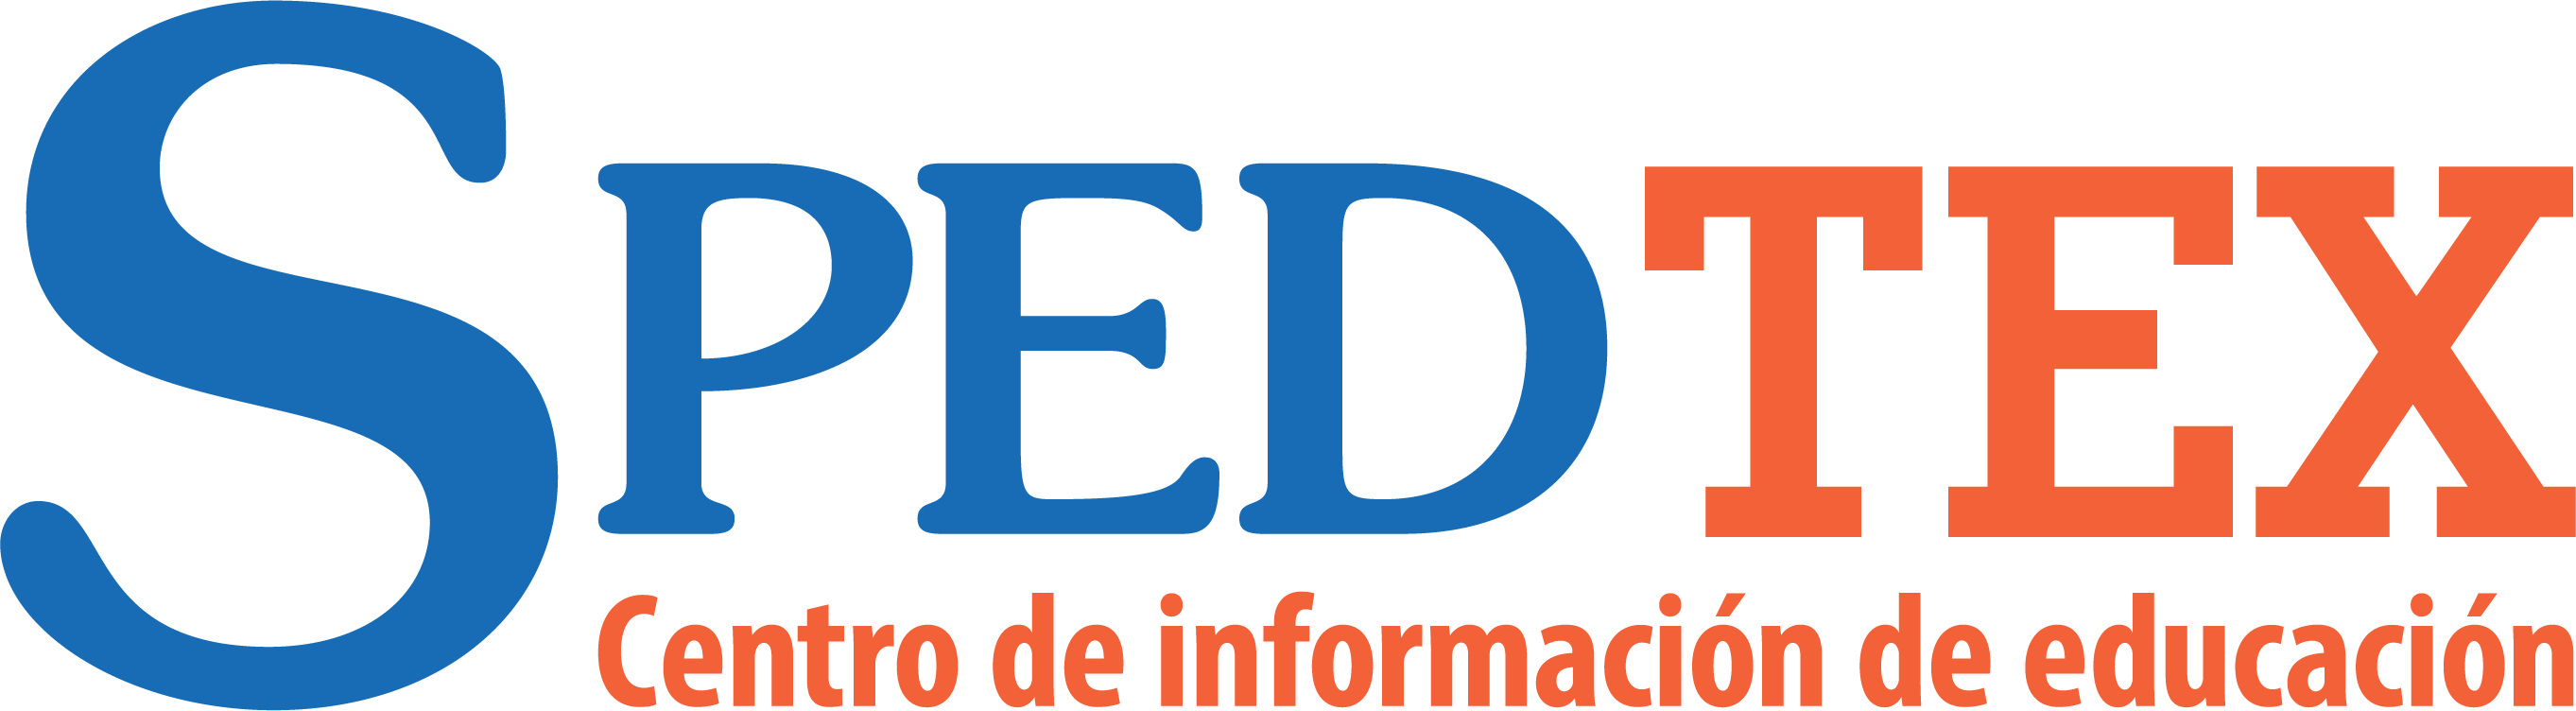 Spedtex logo